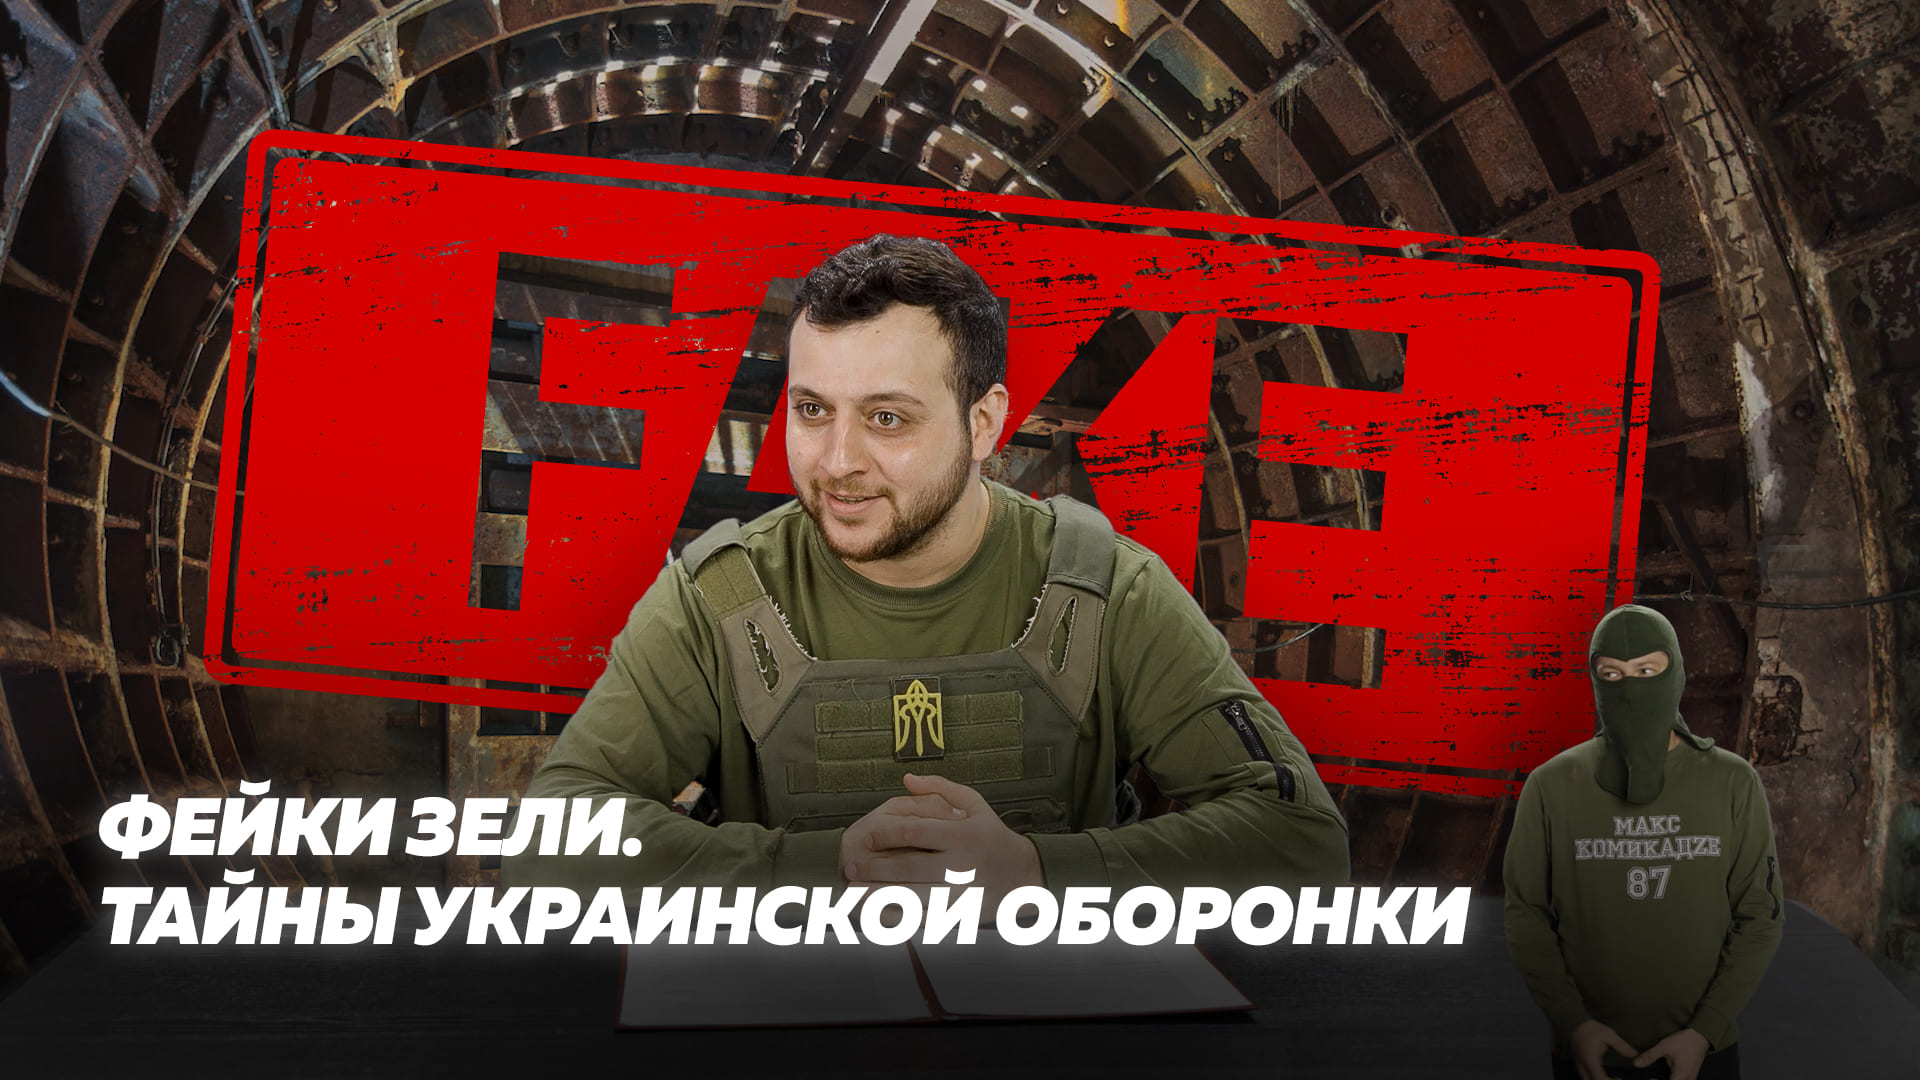 Фейки Зeли. Тайны украинской оборонки